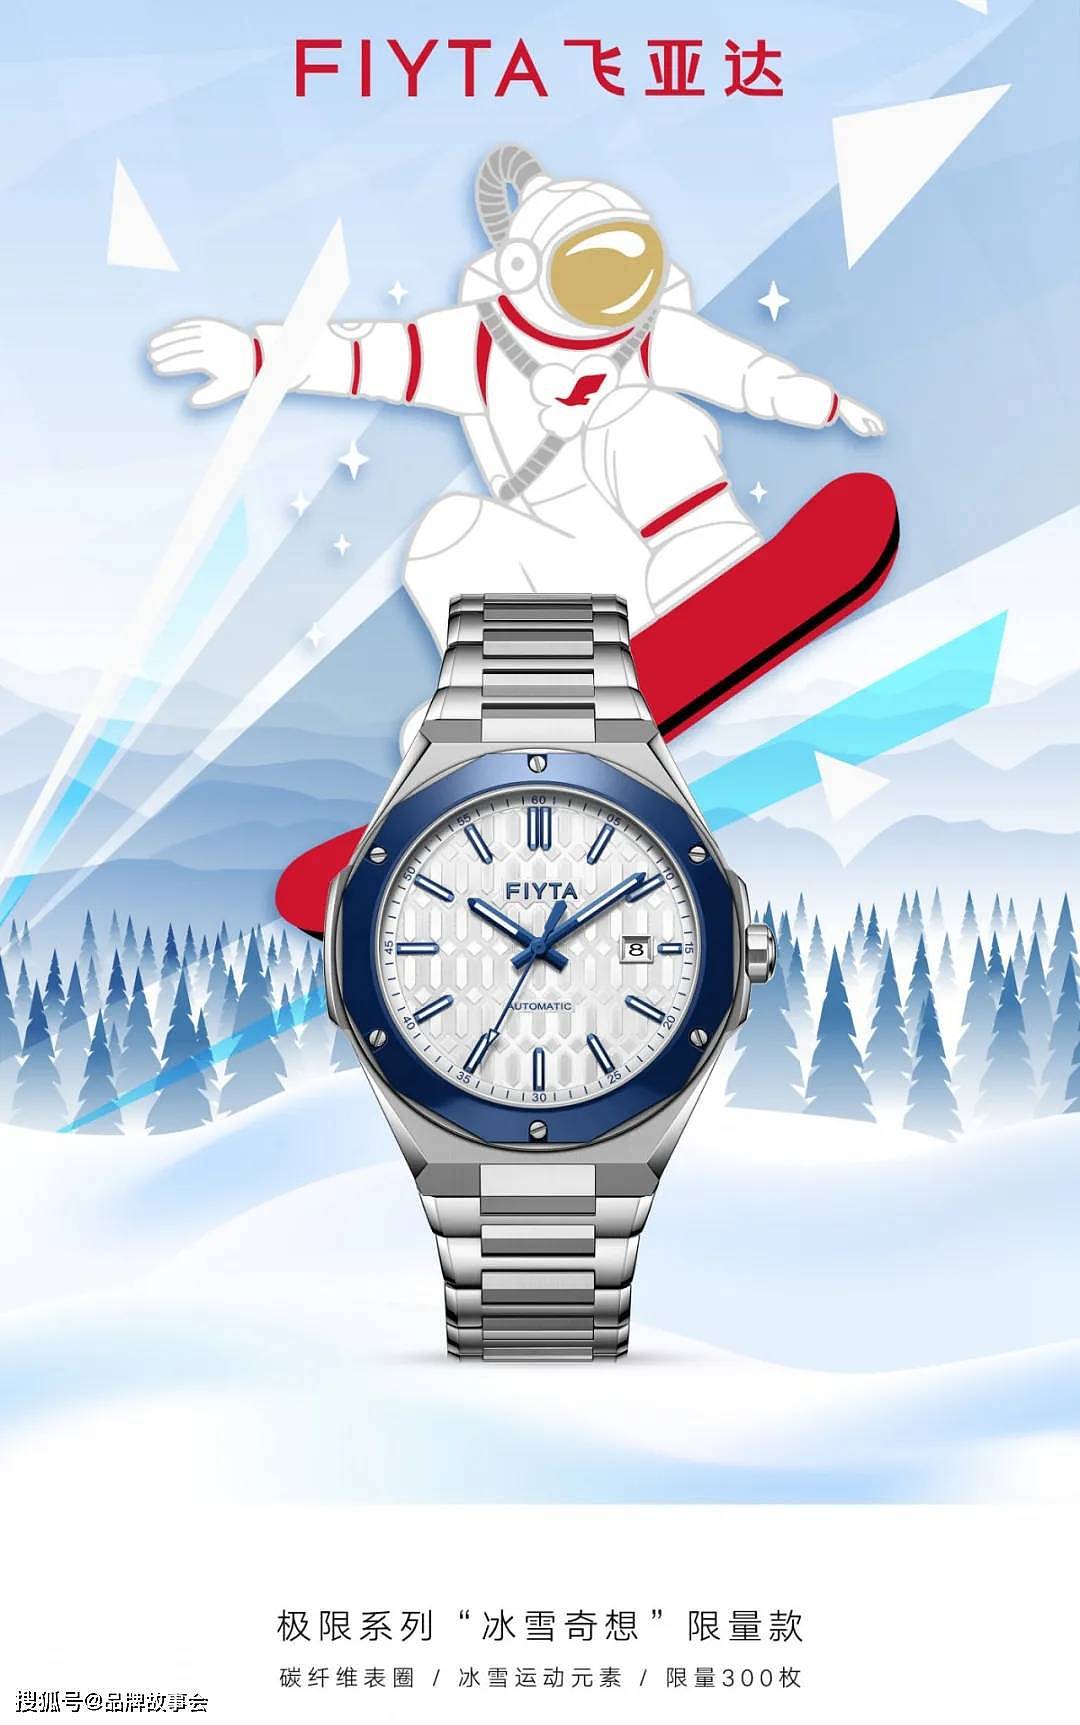 速度至上 雪地灵感 飞亚达推出极限系列“冰雪奇想”限量腕表 - 1